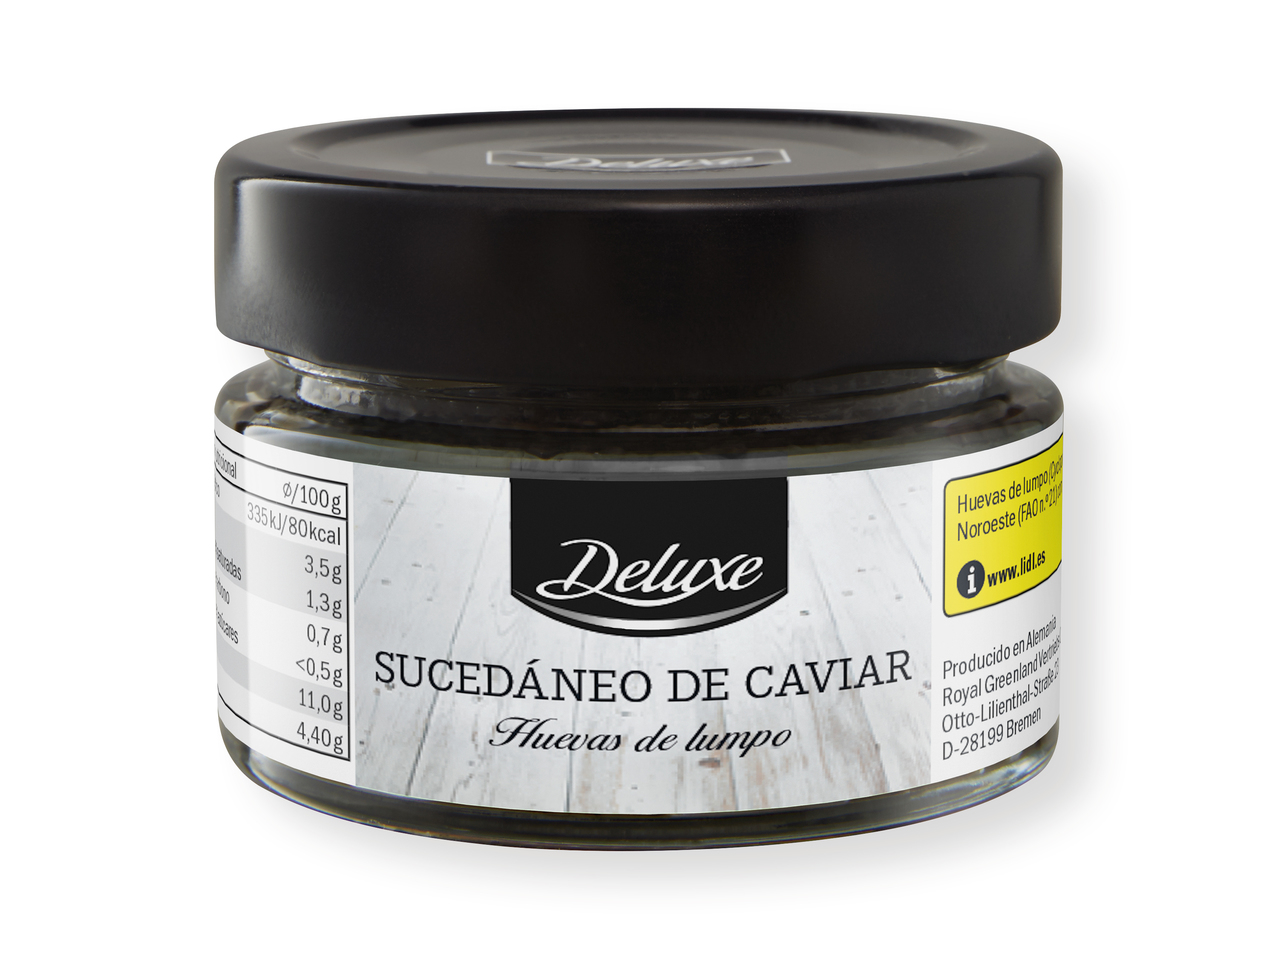 "Deluxe" Sucedáneo de caviar